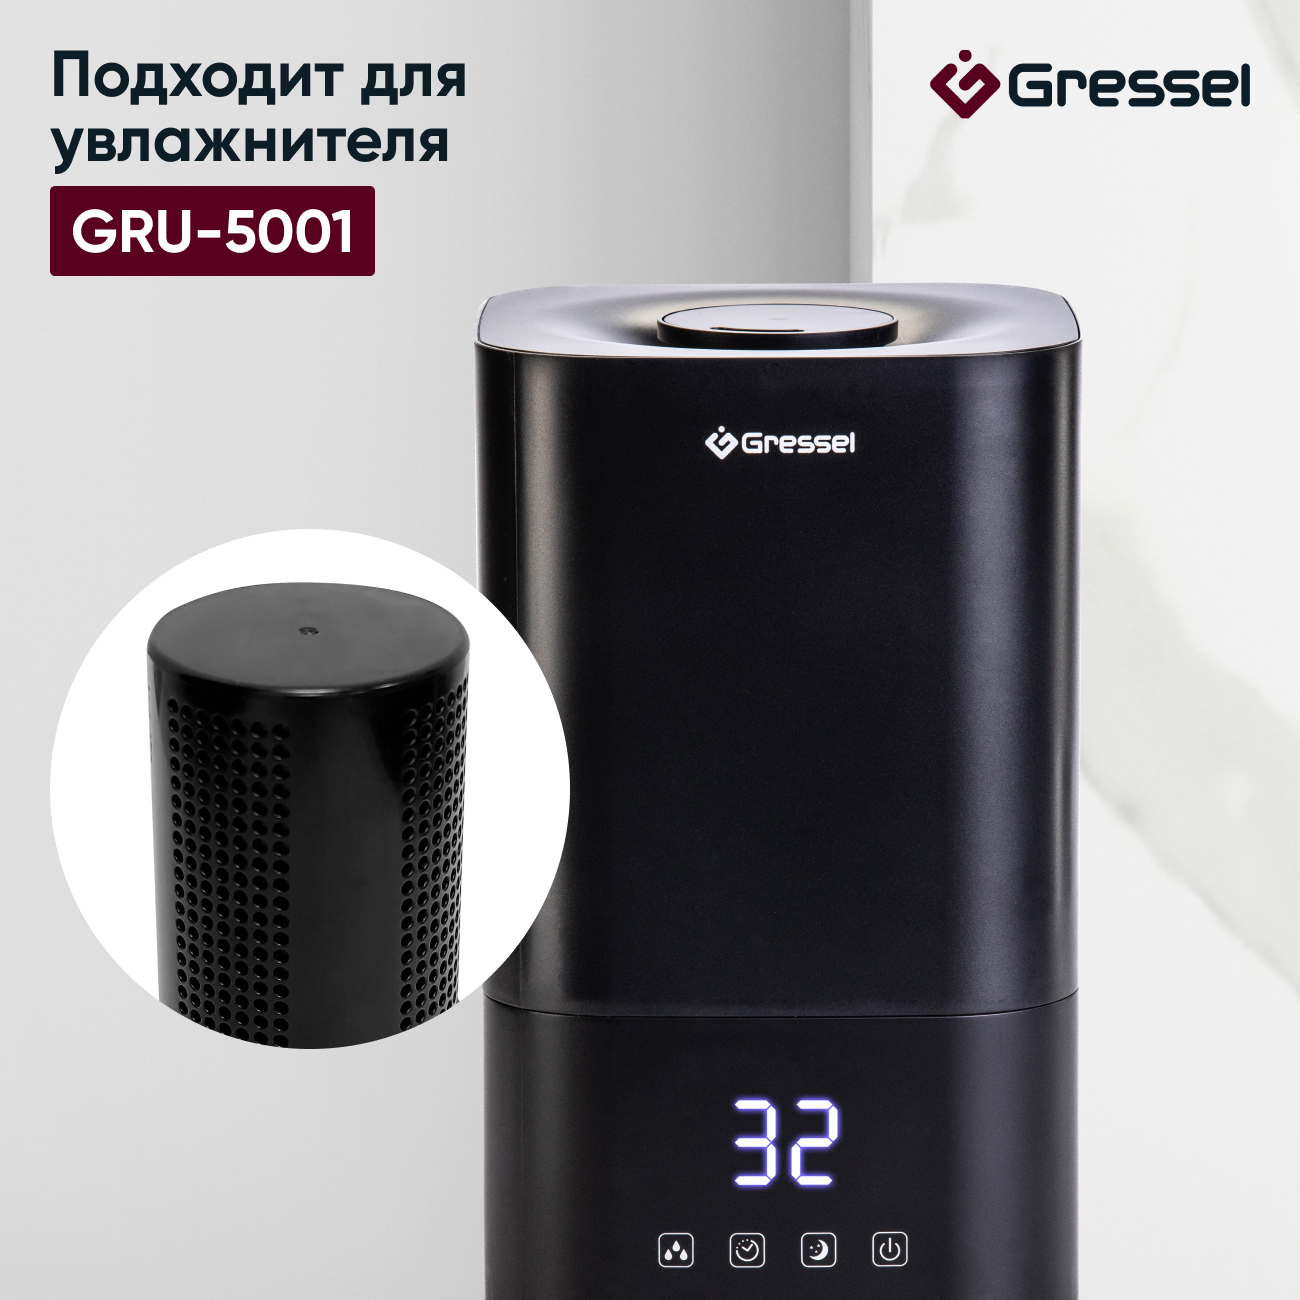 Фильтр увлажнителя воздуха Gressel G-5001 для модели GRU-5001